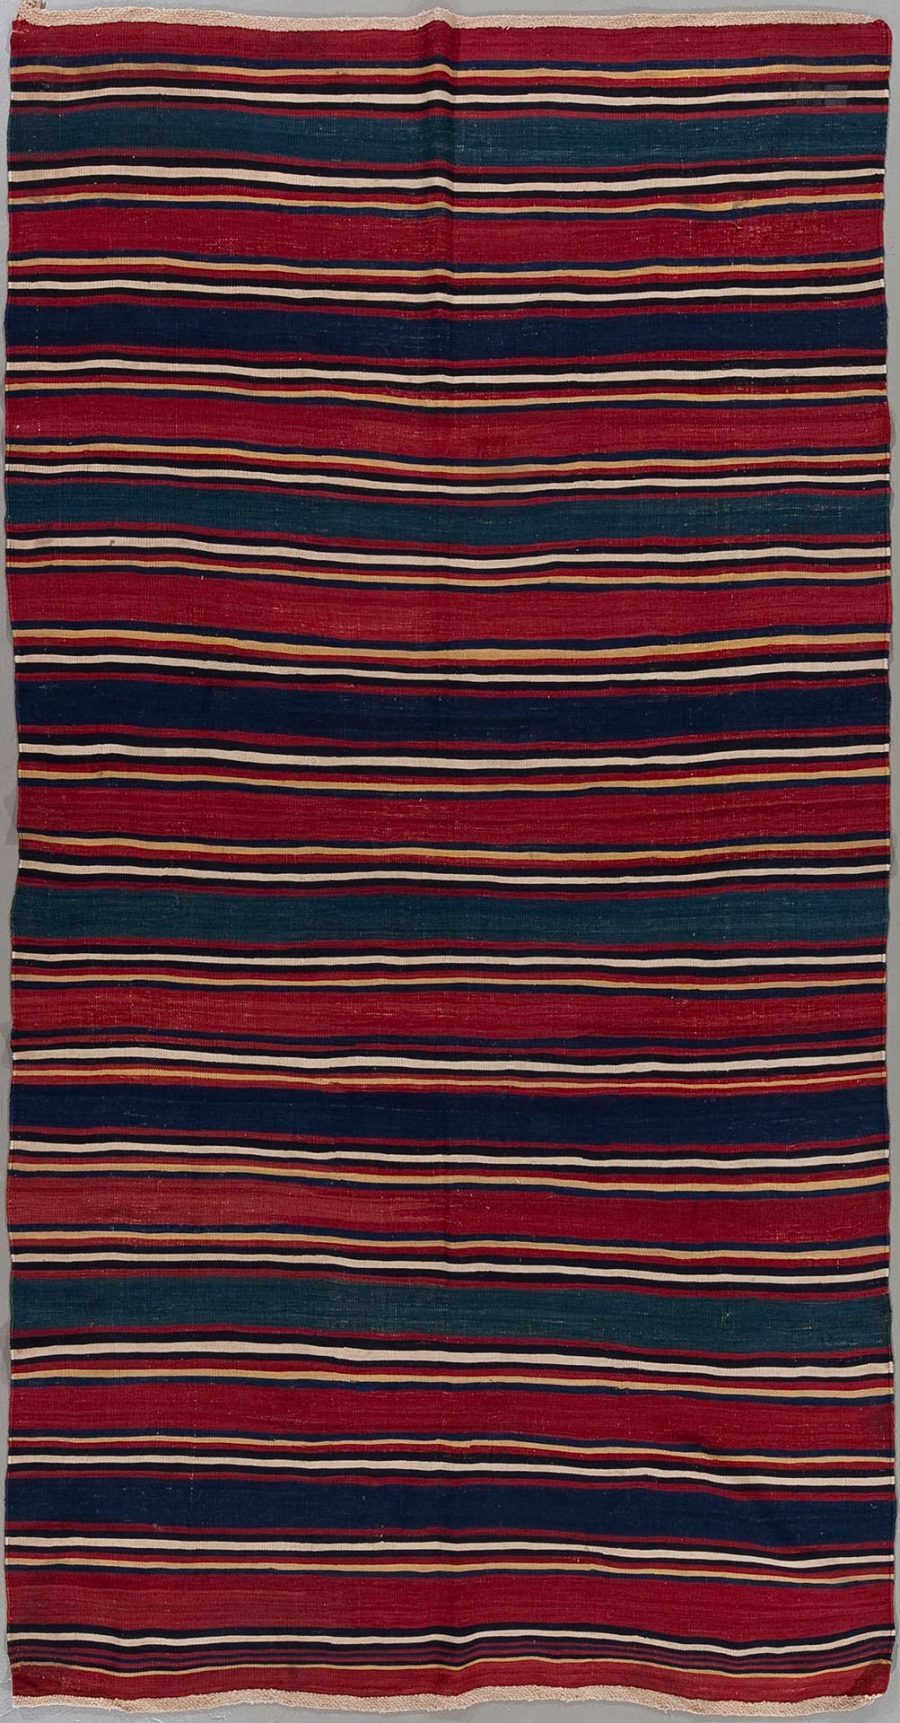 Traditioneller handgewebter Teppich mit horizontalen Streifen in abwechselnden Farben von Rot, Dunkelblau und gelblichen Akzenten auf einem groben, ungebleichten Stoff.